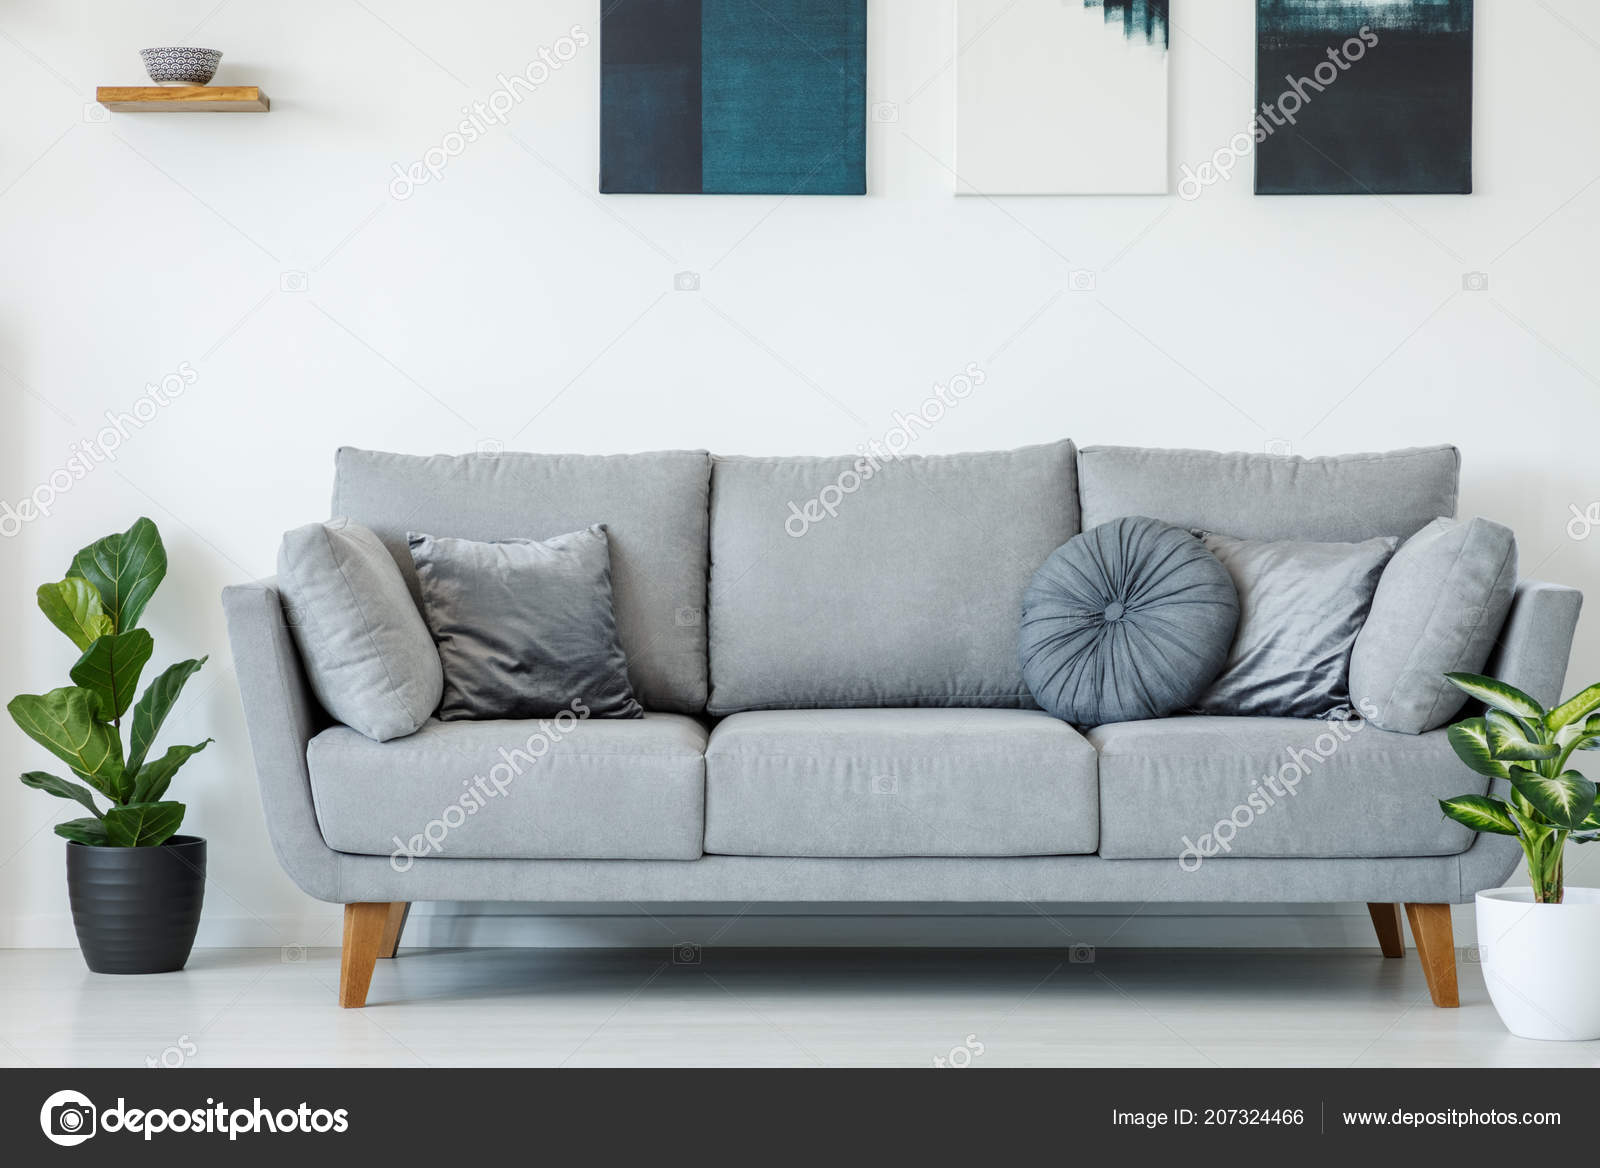 https://st4.depositphotos.com/2249091/20732/i/1600/depositphotos_207324466-stock-photo-comfy-grey-sofa-decorated-pillows.jpg